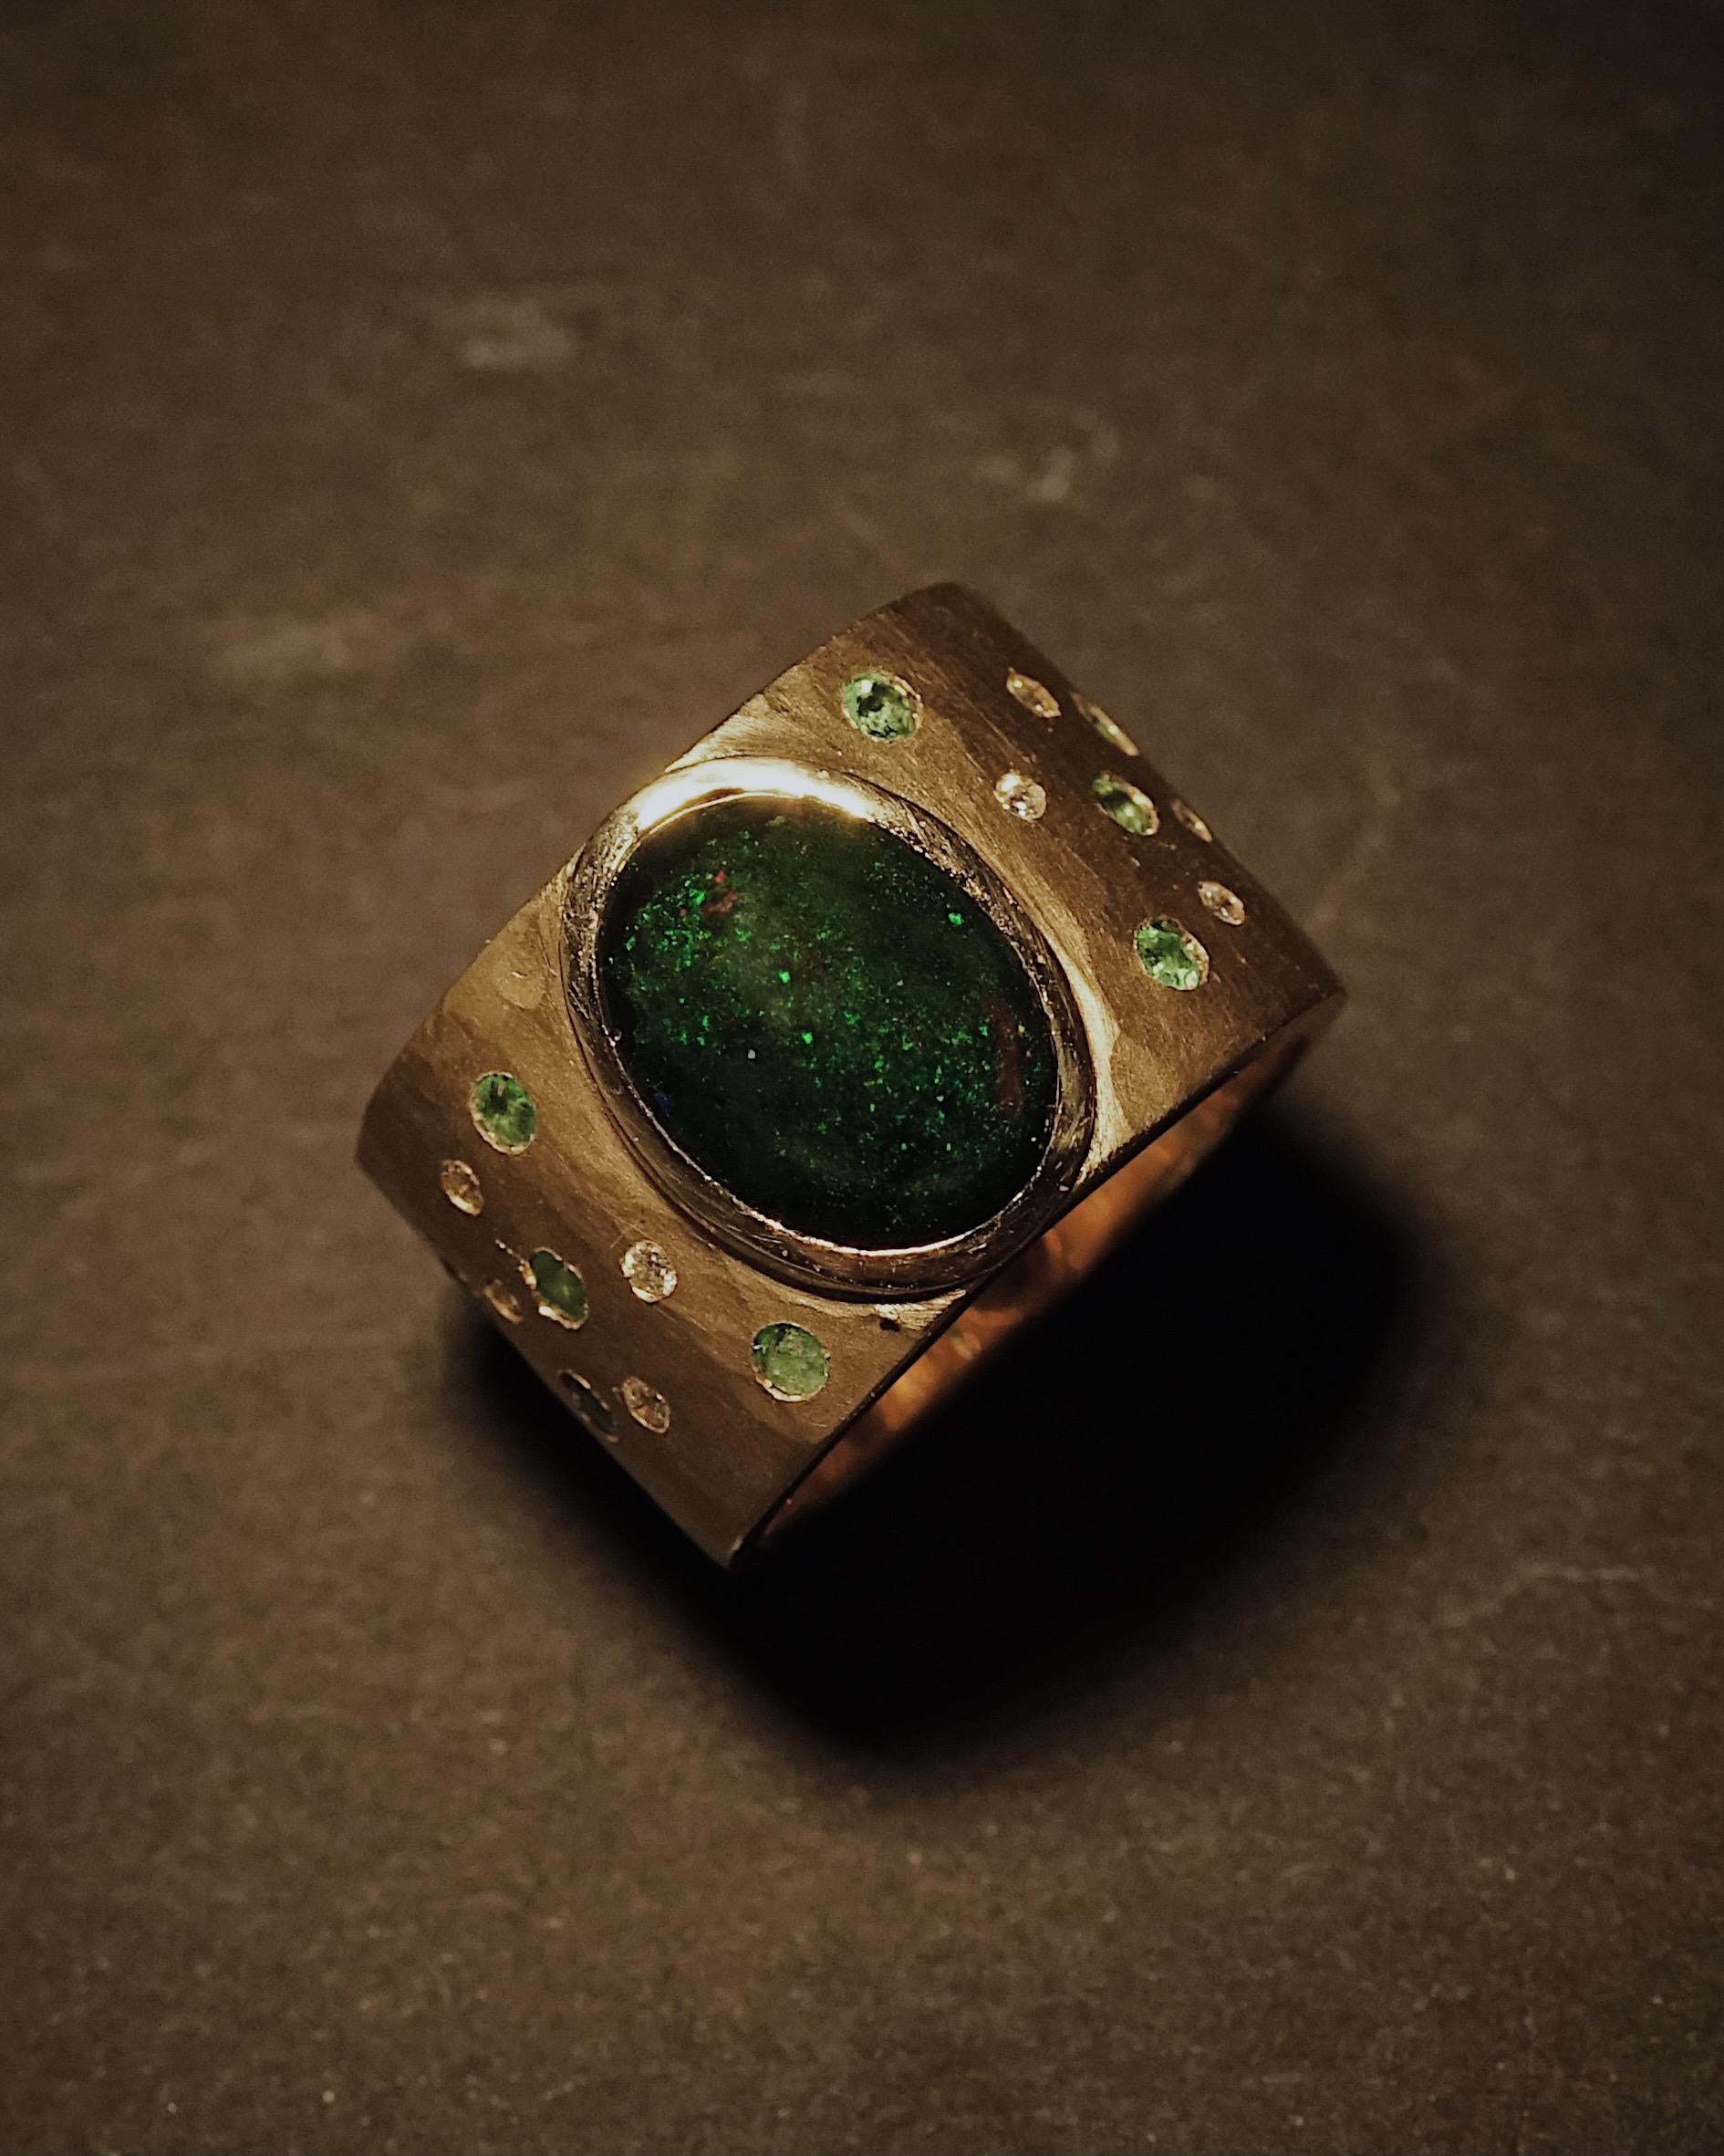 Schöne zertifizierte natürliche Black Opal Cluster Ring.
Das Zentrum des aus 18 Karat Gold gefertigten Schmuckstücks ziert ein GIA-zertifizierter, natürlicher und unbehandelter schwarzer Opal von 2,62 Karat im ovalen Doppel-Cabochon-Schliff. Die